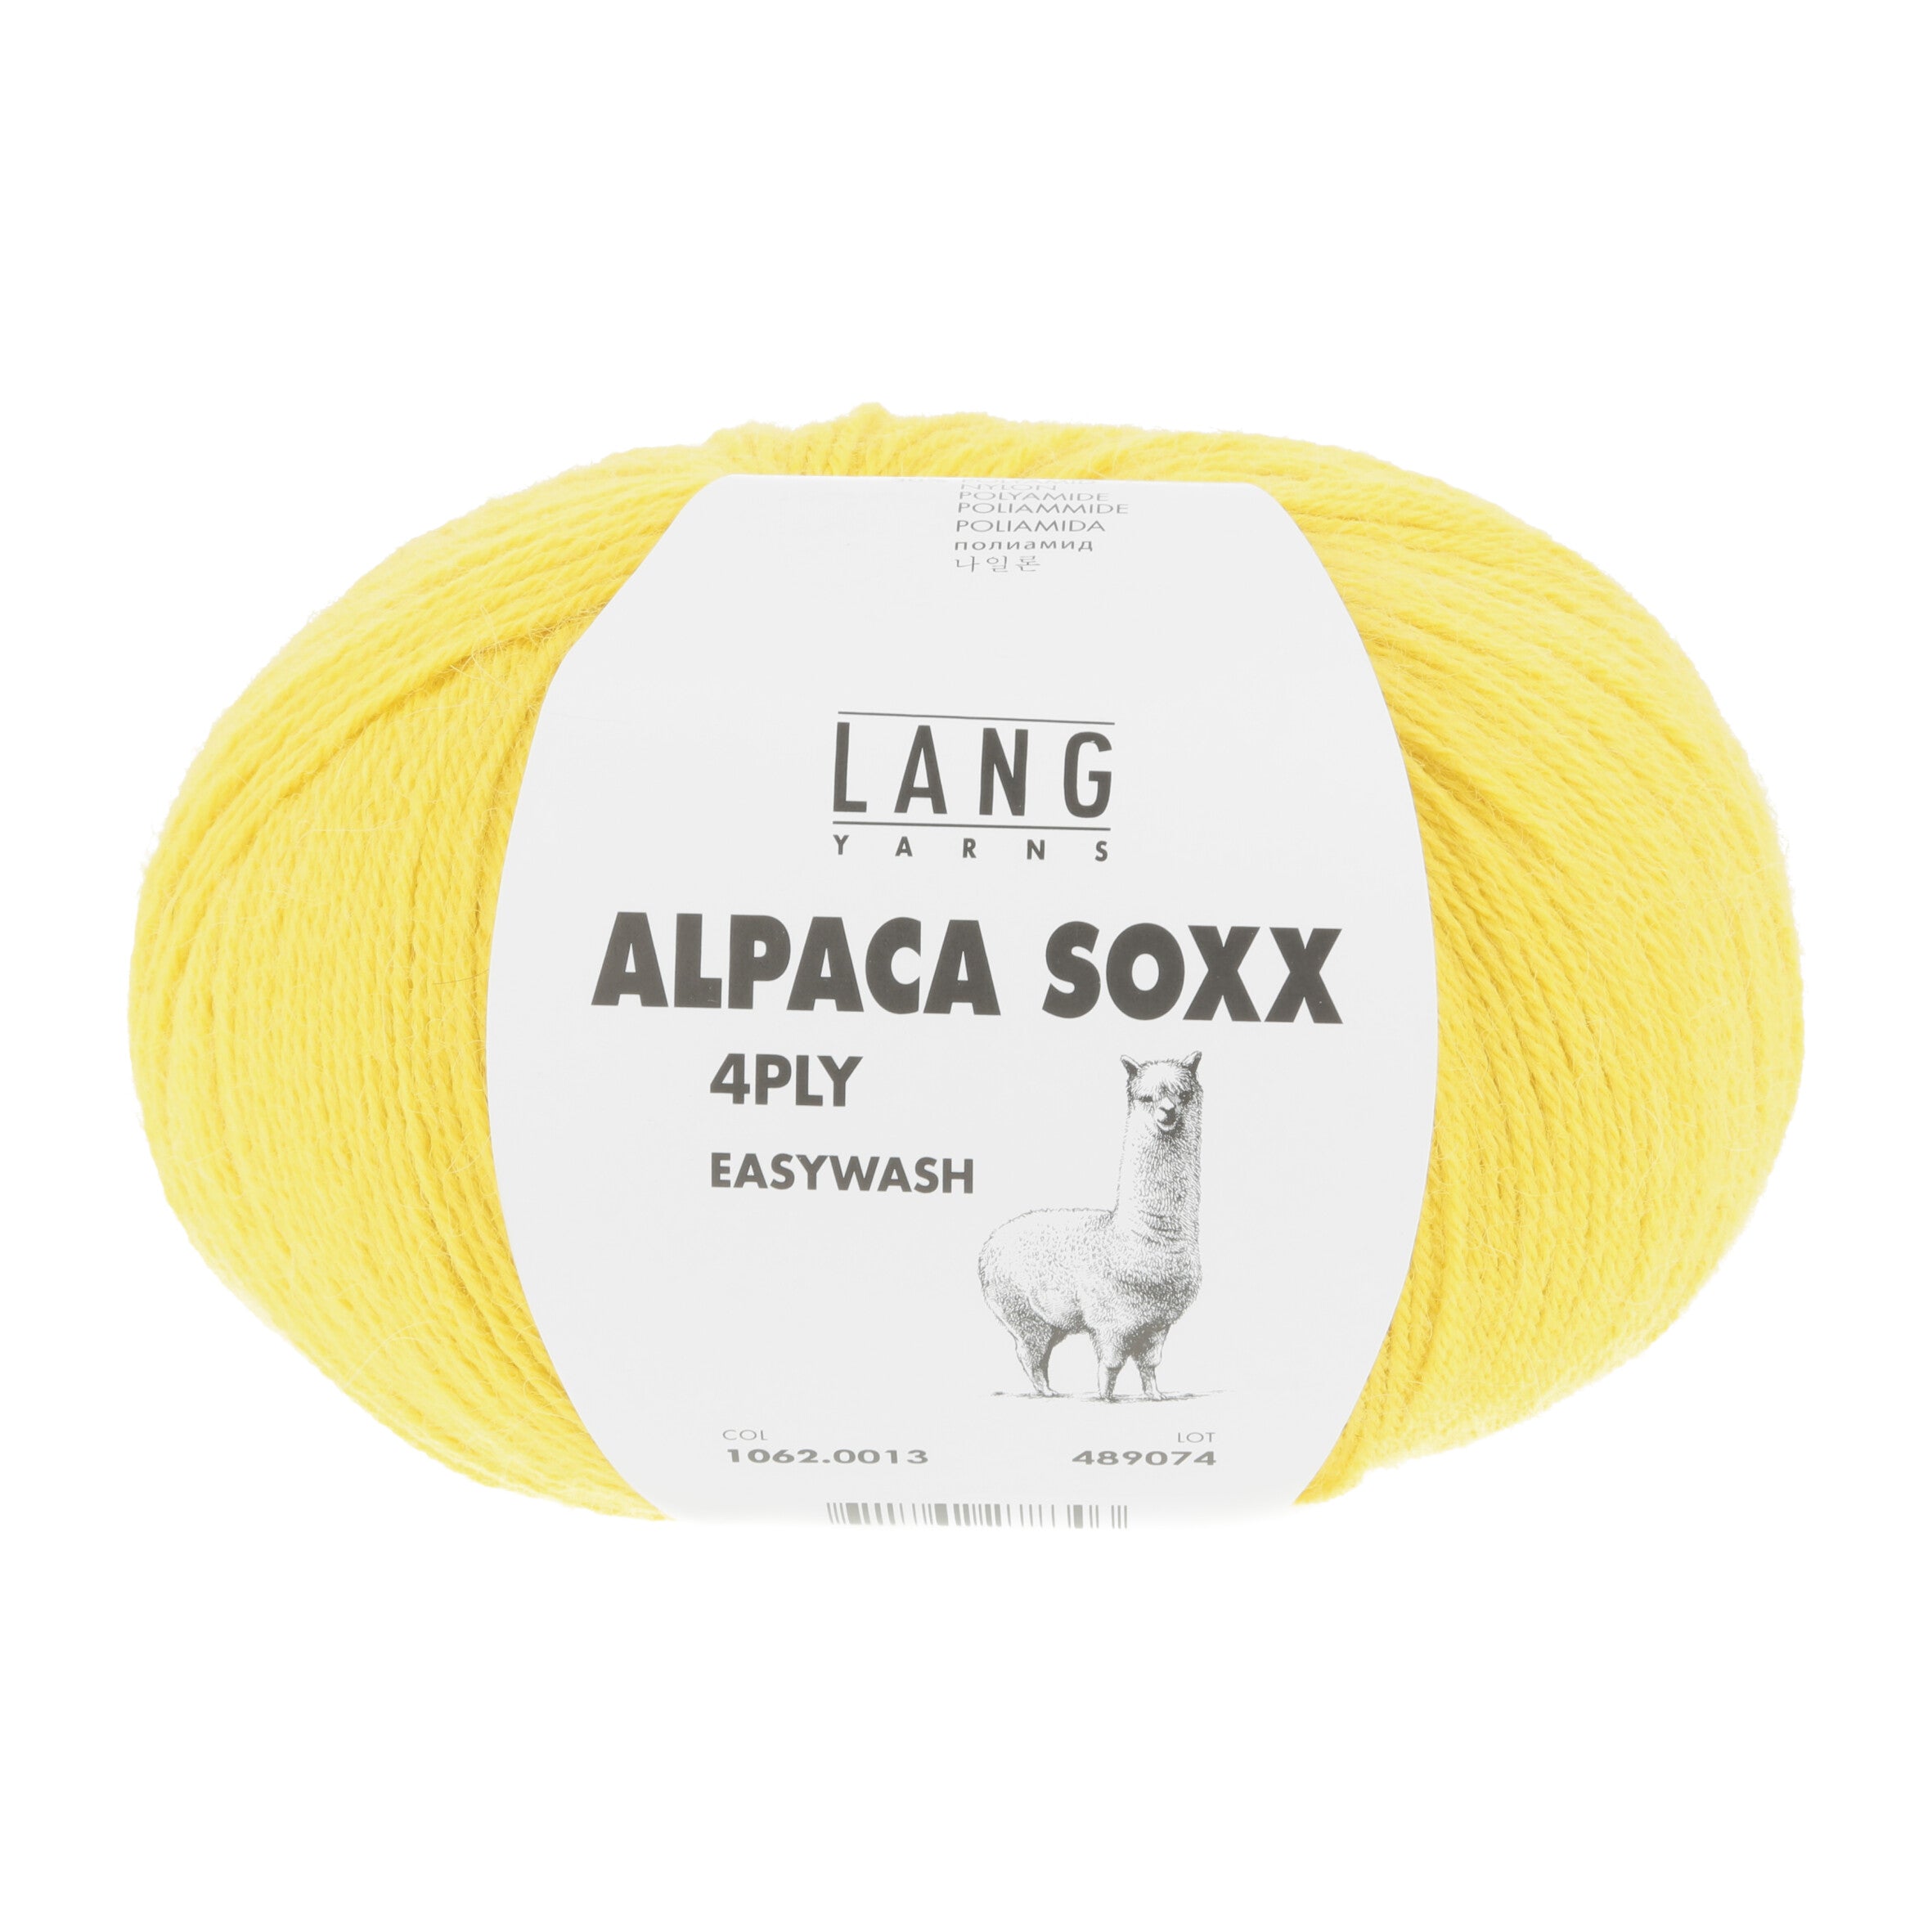 LANGYARNS Alpaca Soxx 4-PLY ** Neue Farben 22/23 **